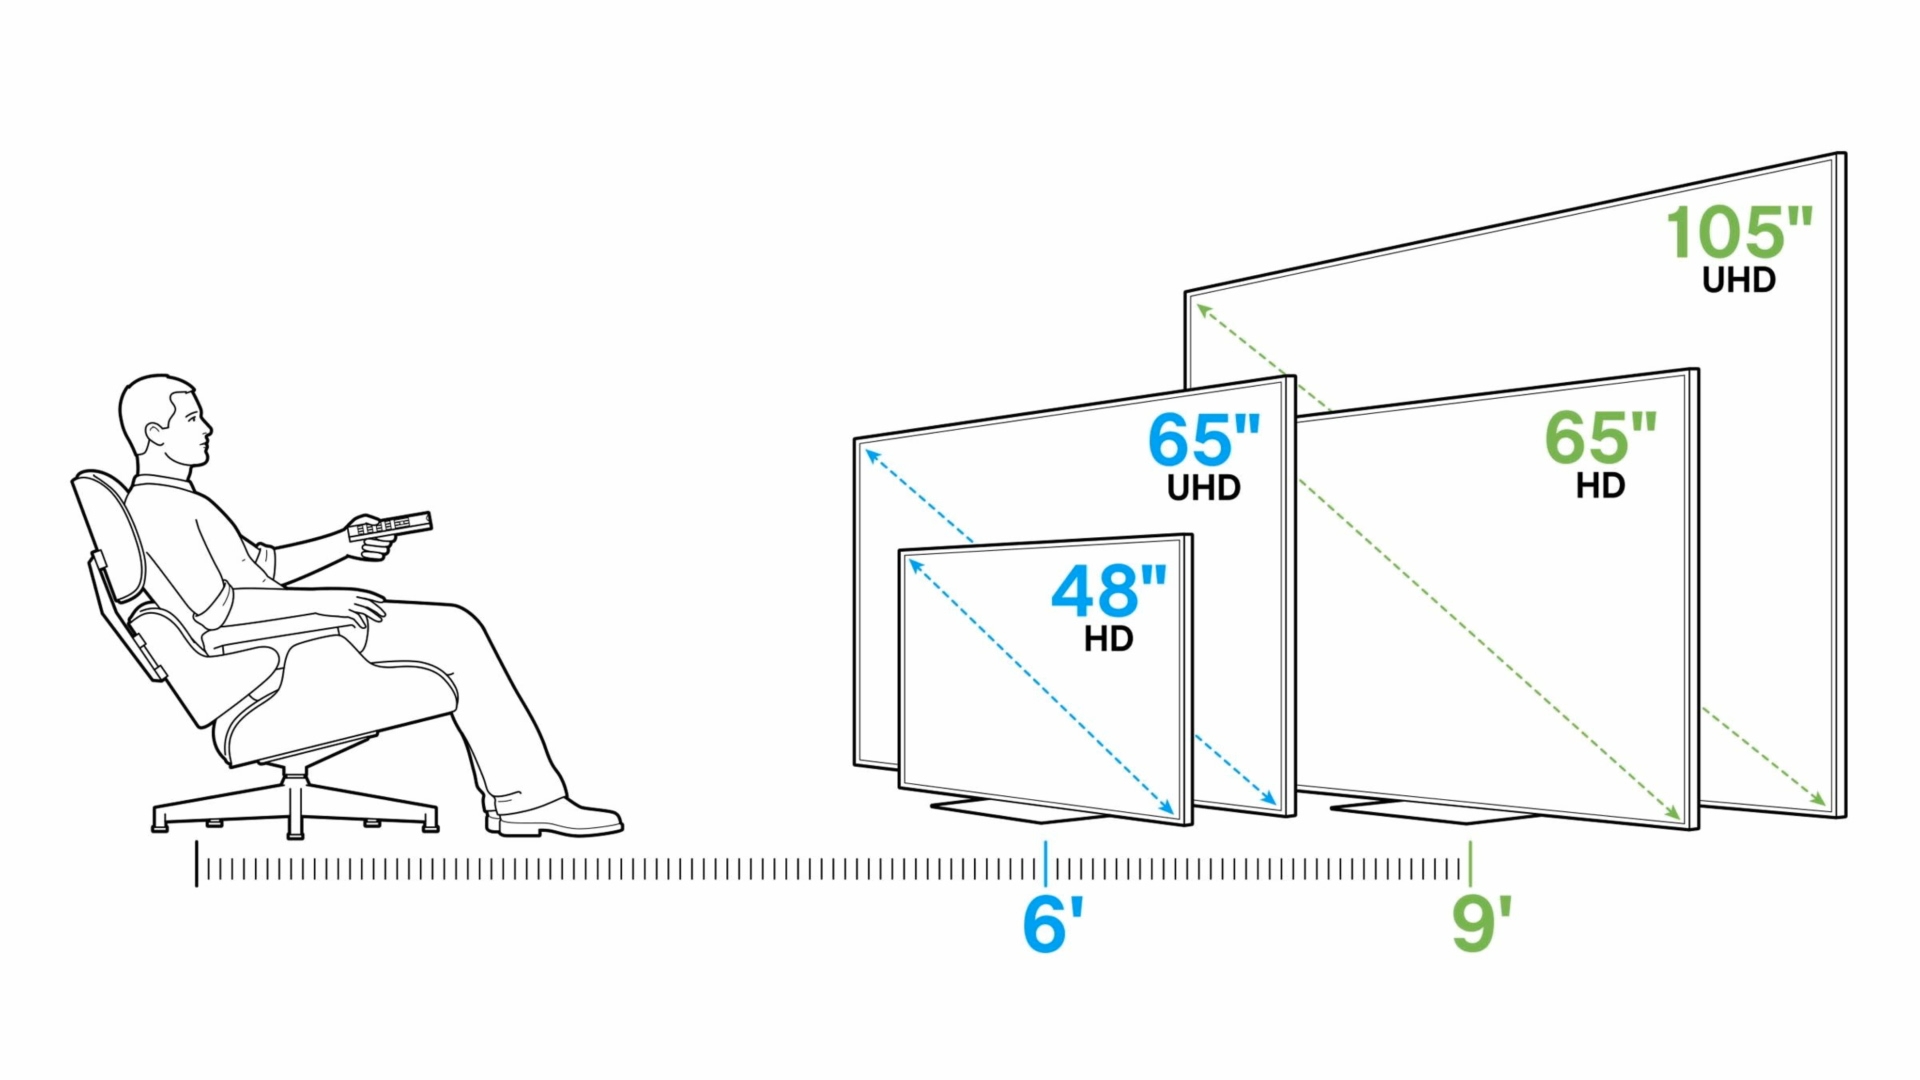 диагональ телевизора и расстояние для просмотра между диваном